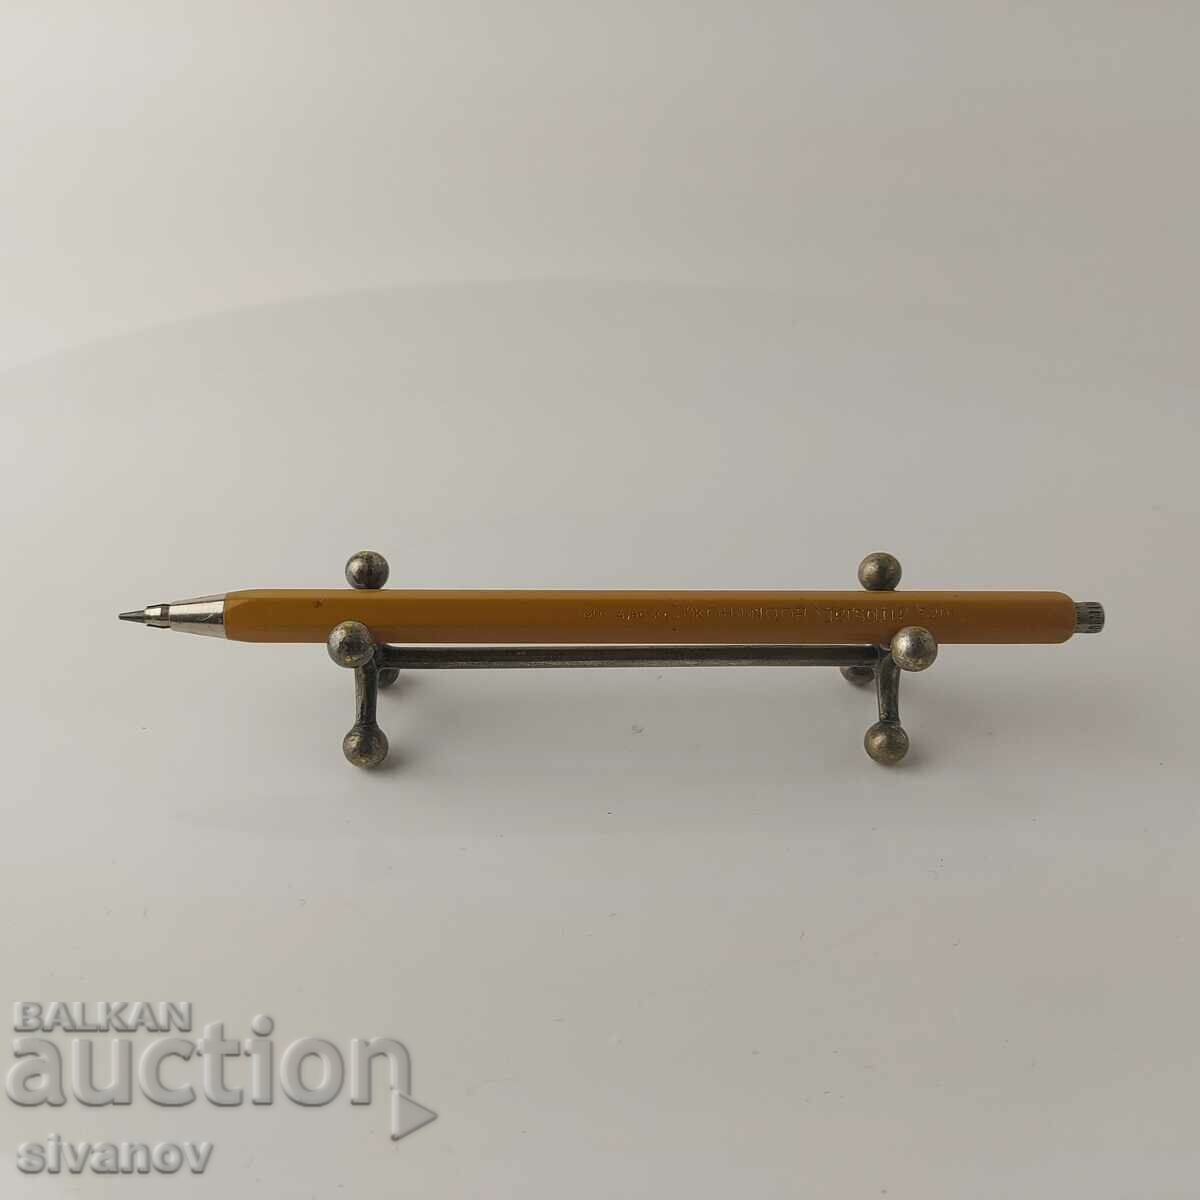 Παλιό μηχανικό μολύβι KOH-I-NOOR Versatil 5201 #5519